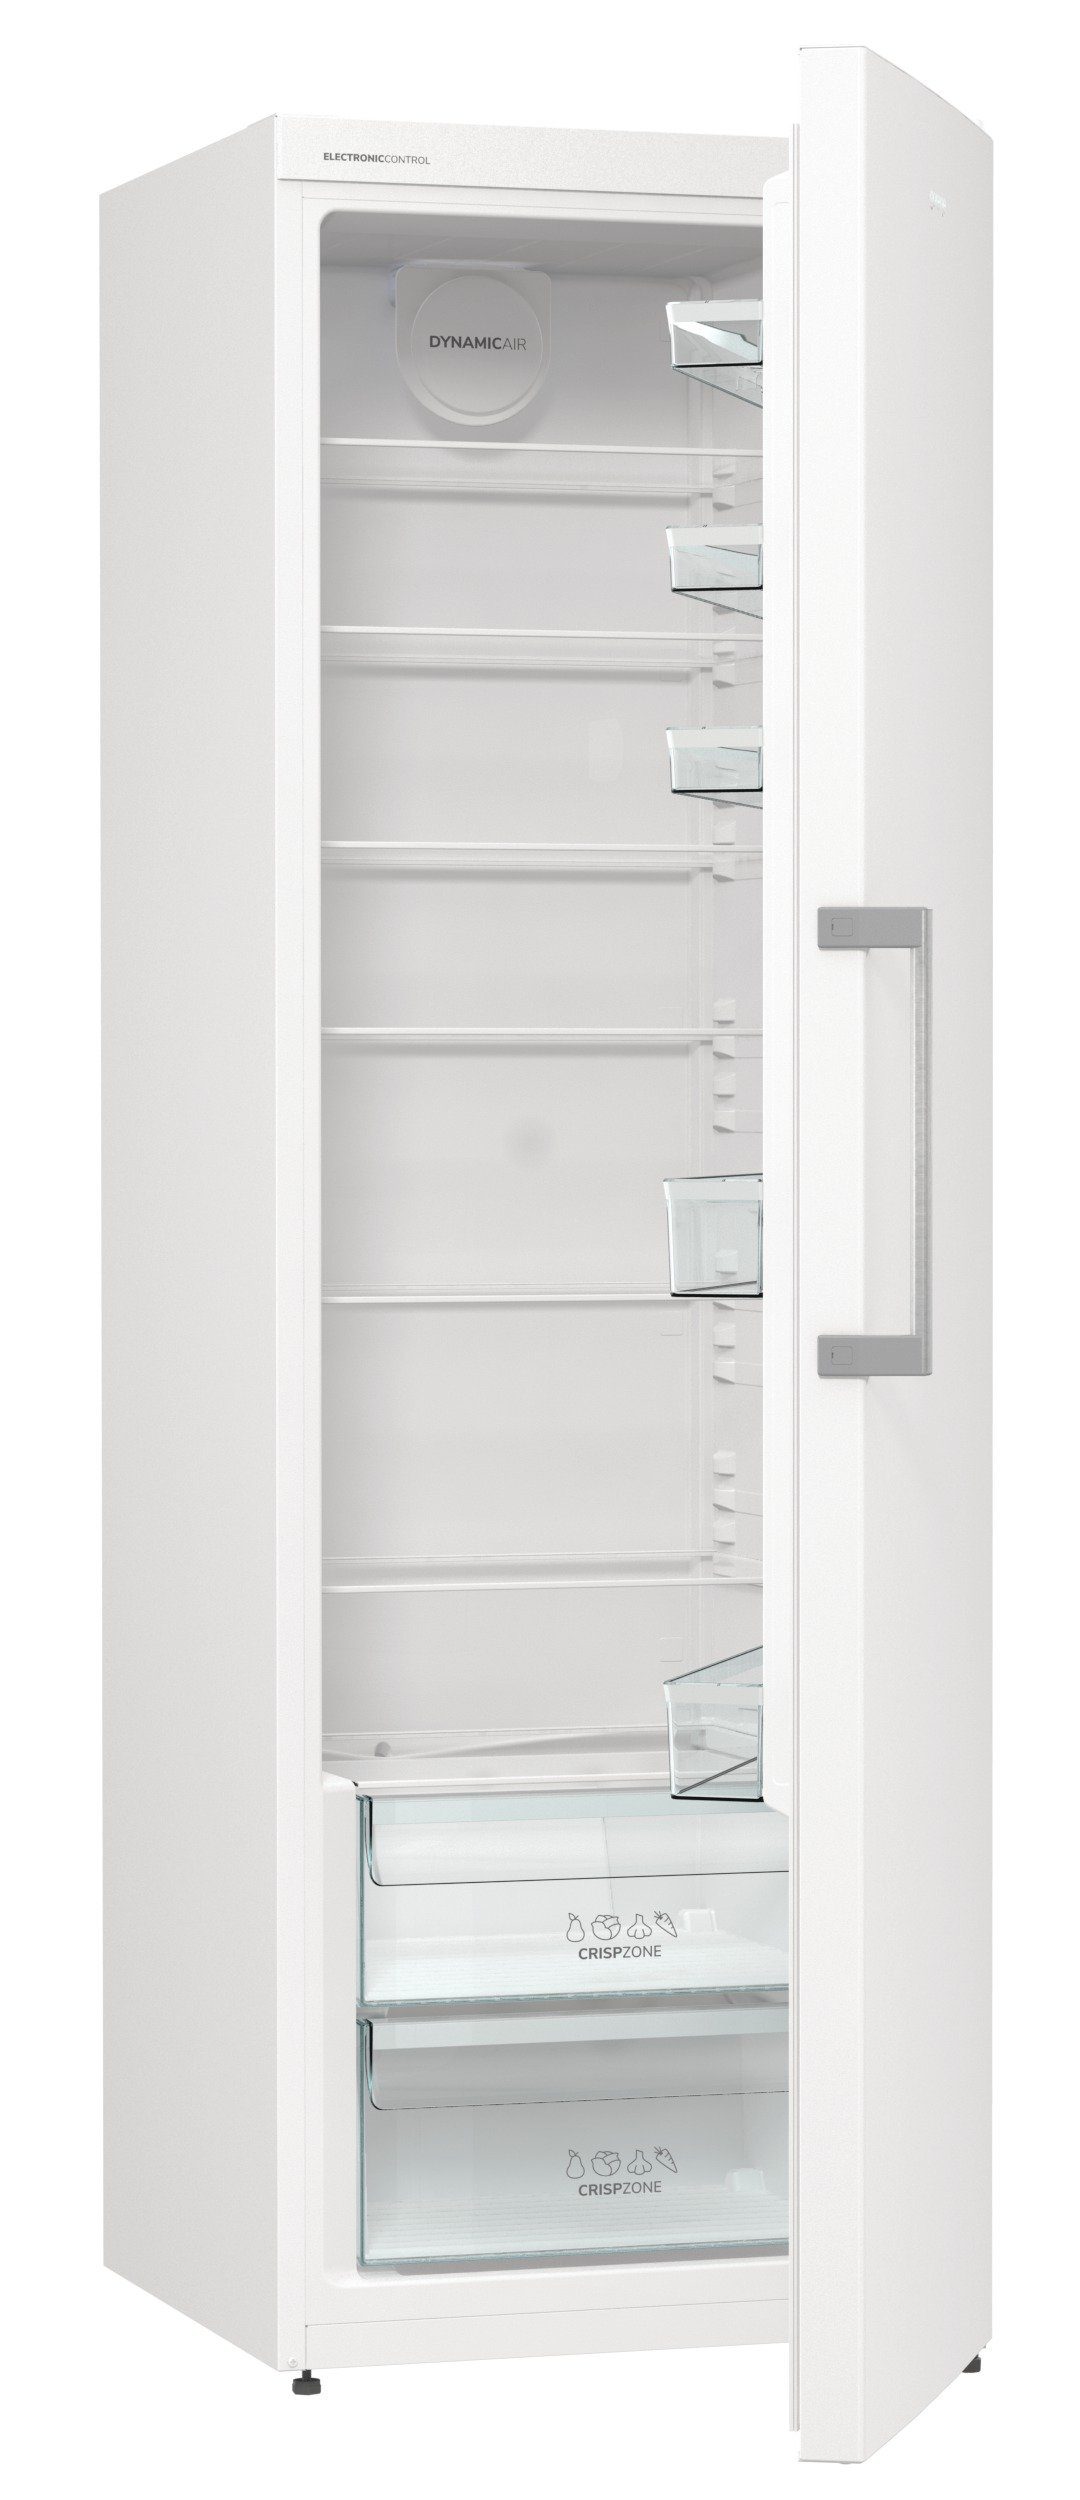 GORENJE Kühlschrank R 619 EEW5, 185 cm hoch, 59,5 cm breit, 280 Liter Volumen